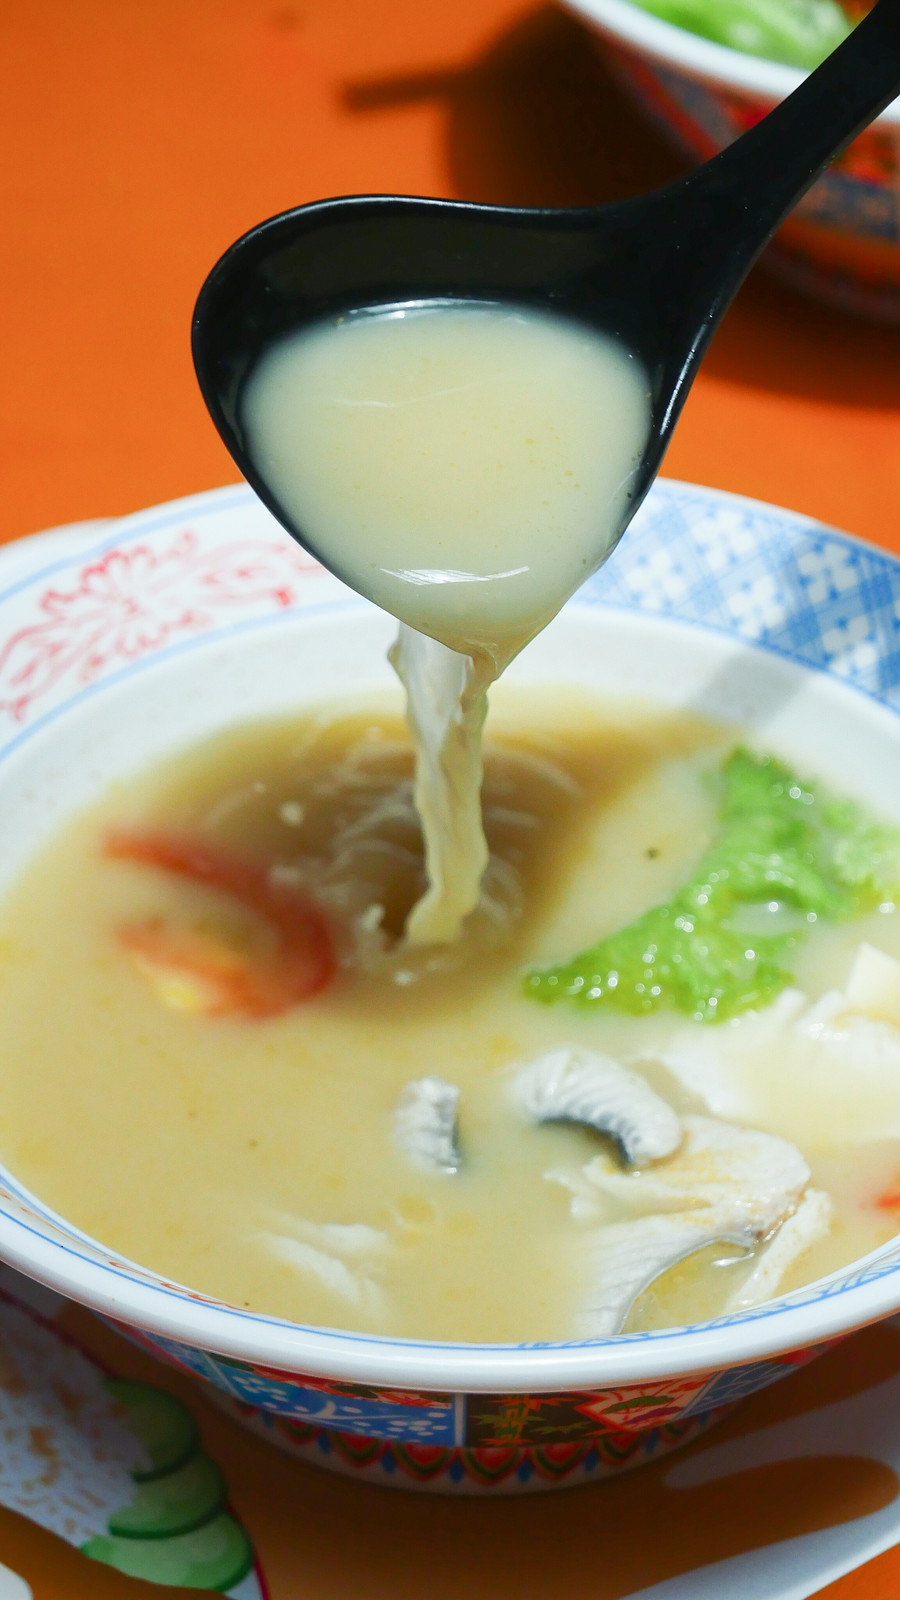 ying jie - soup pouring